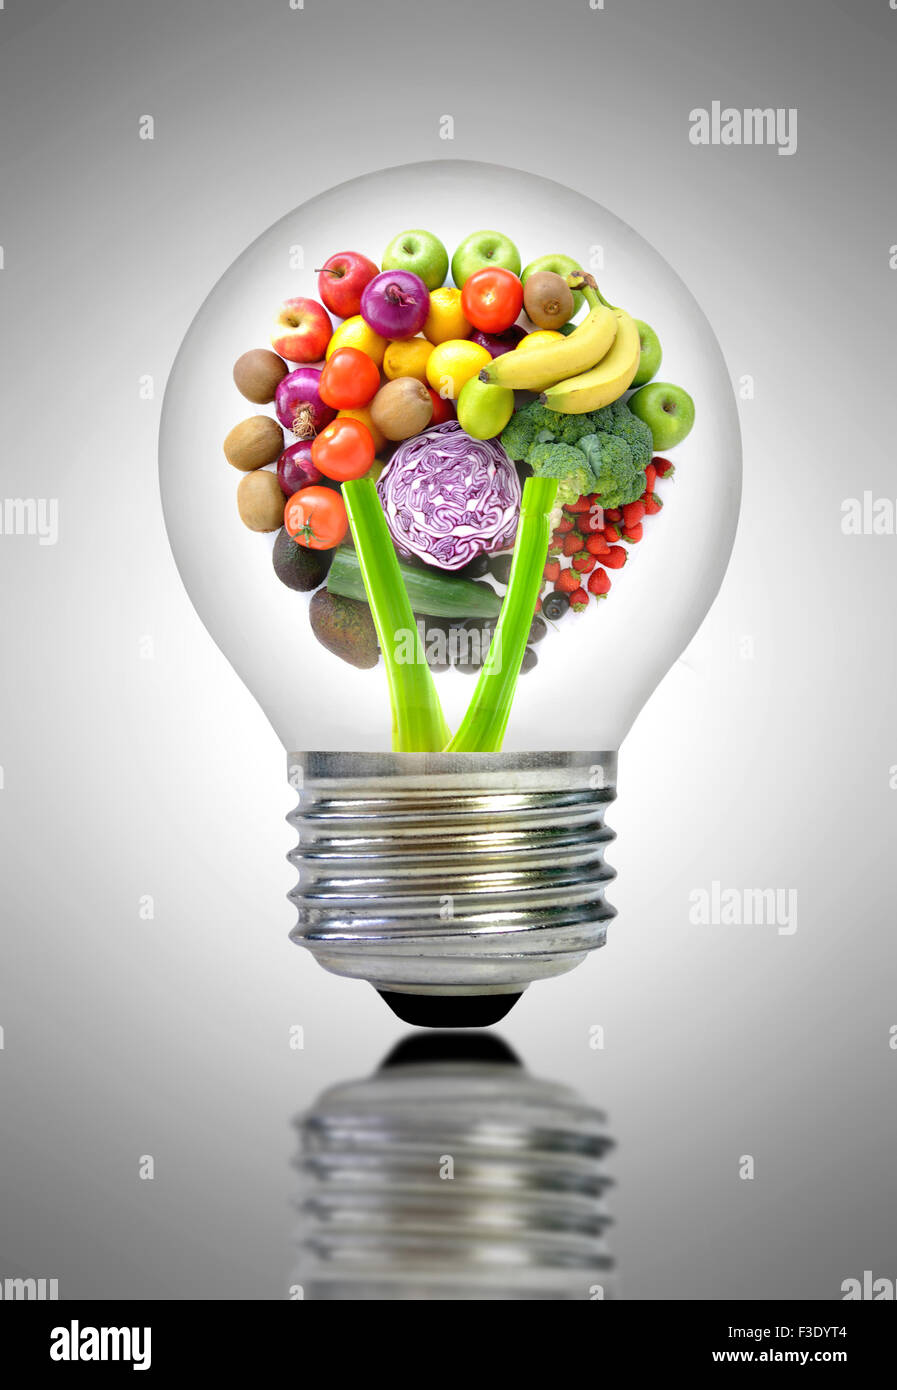 Ingrédients de fruits et légumes à l'intérieur d'une ampoule électrique Banque D'Images